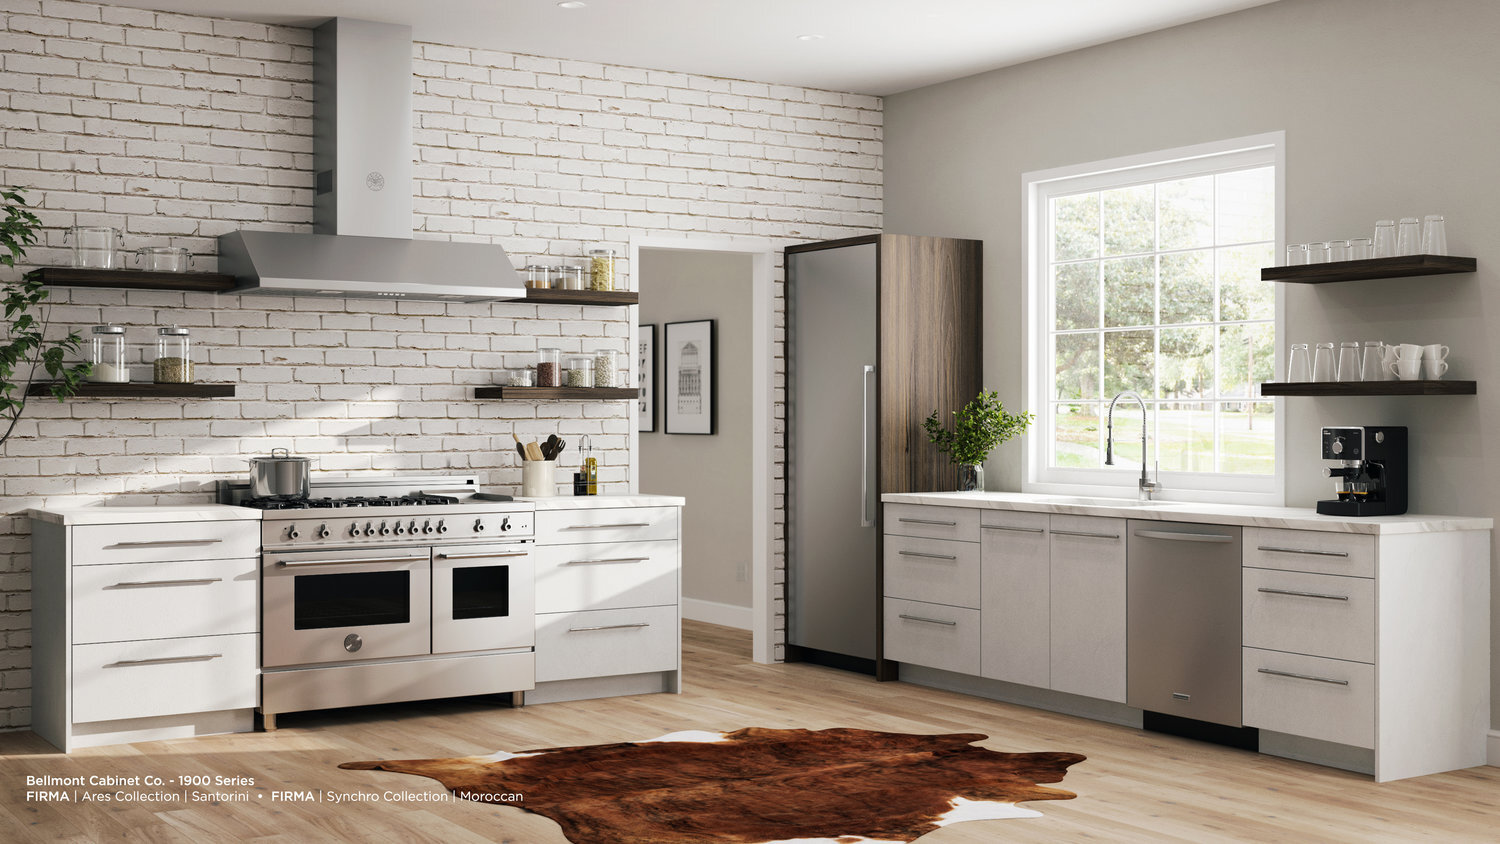  Belmont custom kitchen cabinets installed 